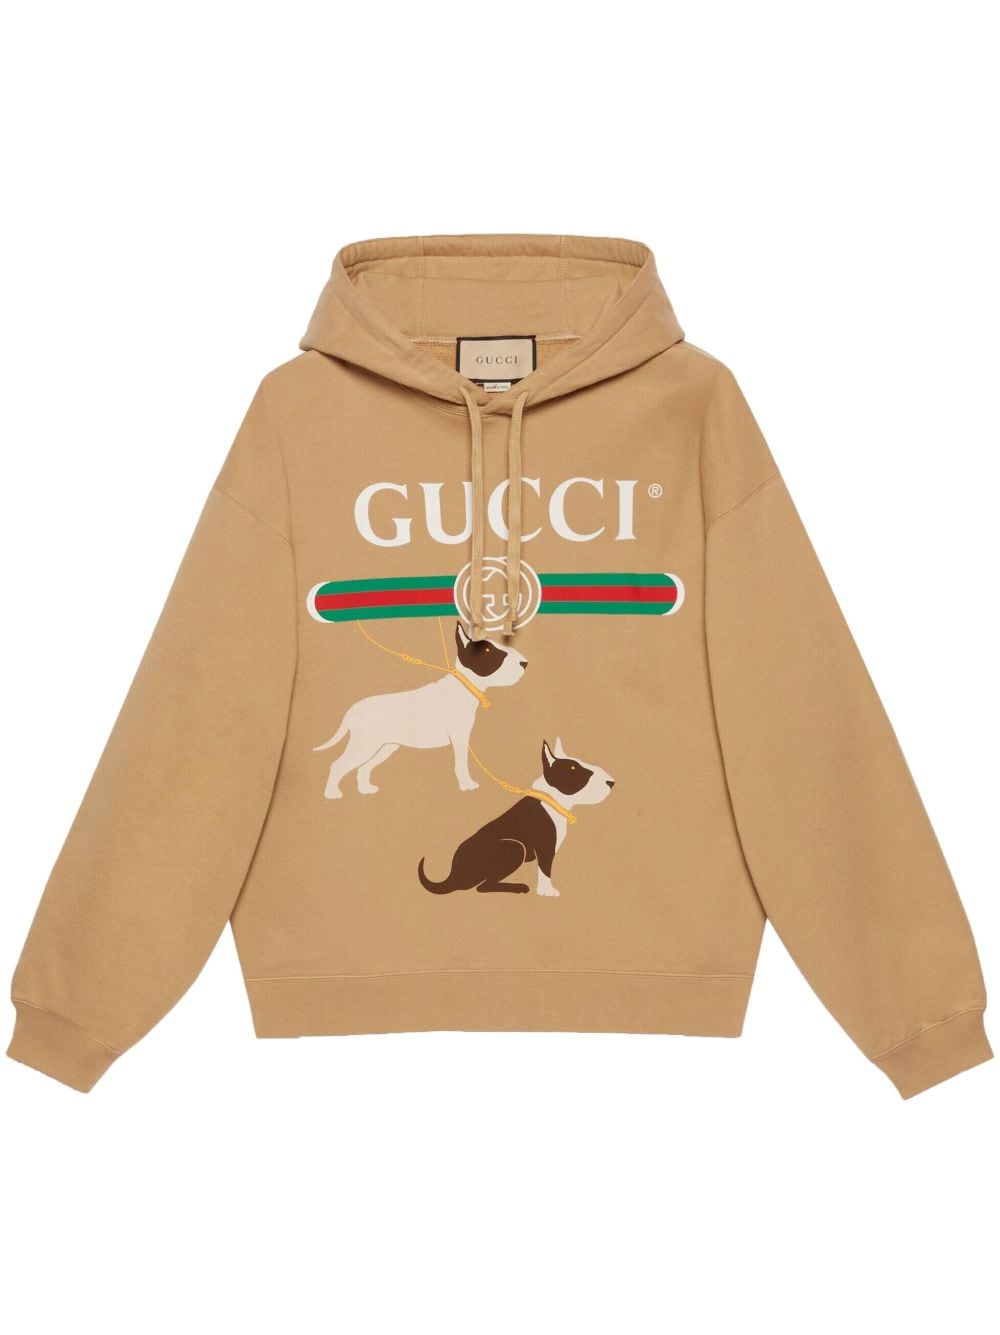 Gucci GG-logo print cotton sweatshirt - Neutrals